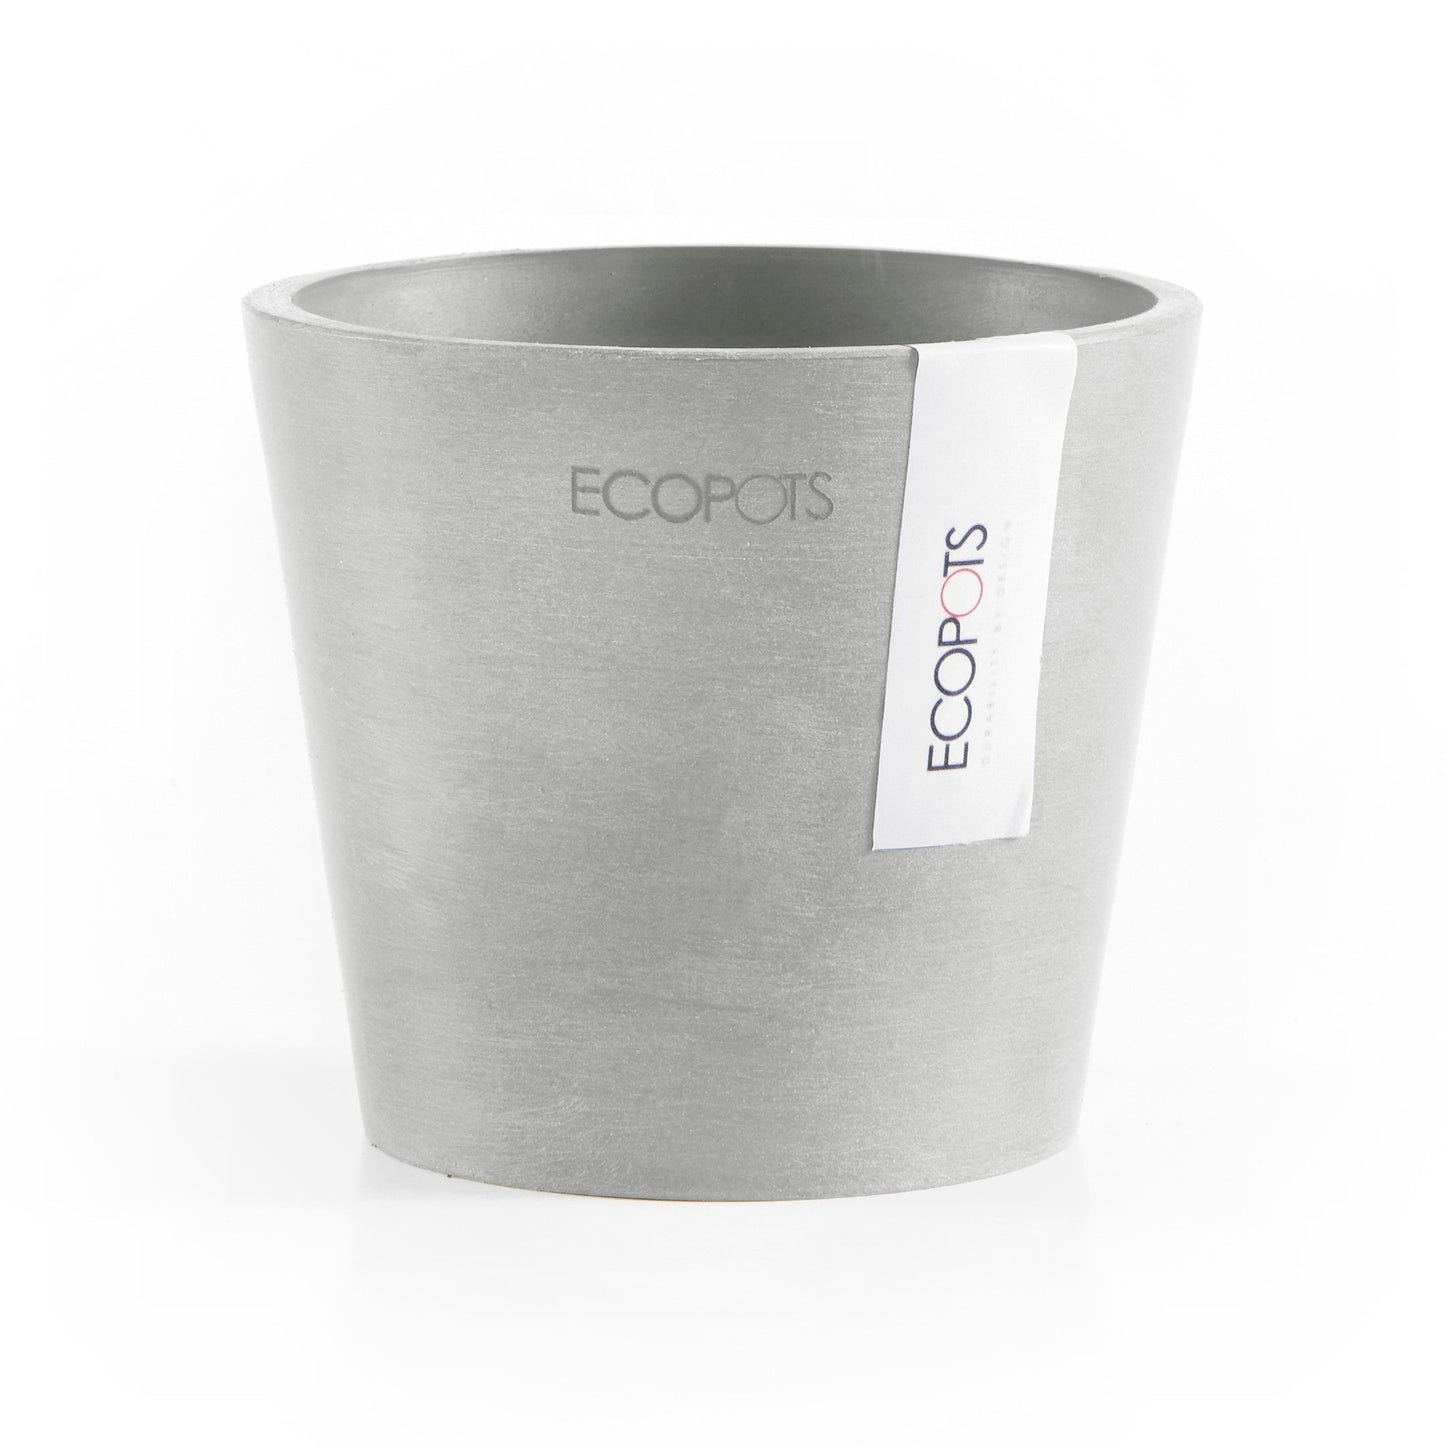 Kukkaruukku - Ecopots - Amsterdam 10,5cm valkoharmaa - Ecopotskauppa - Uuden aikakauden kukkaruukku